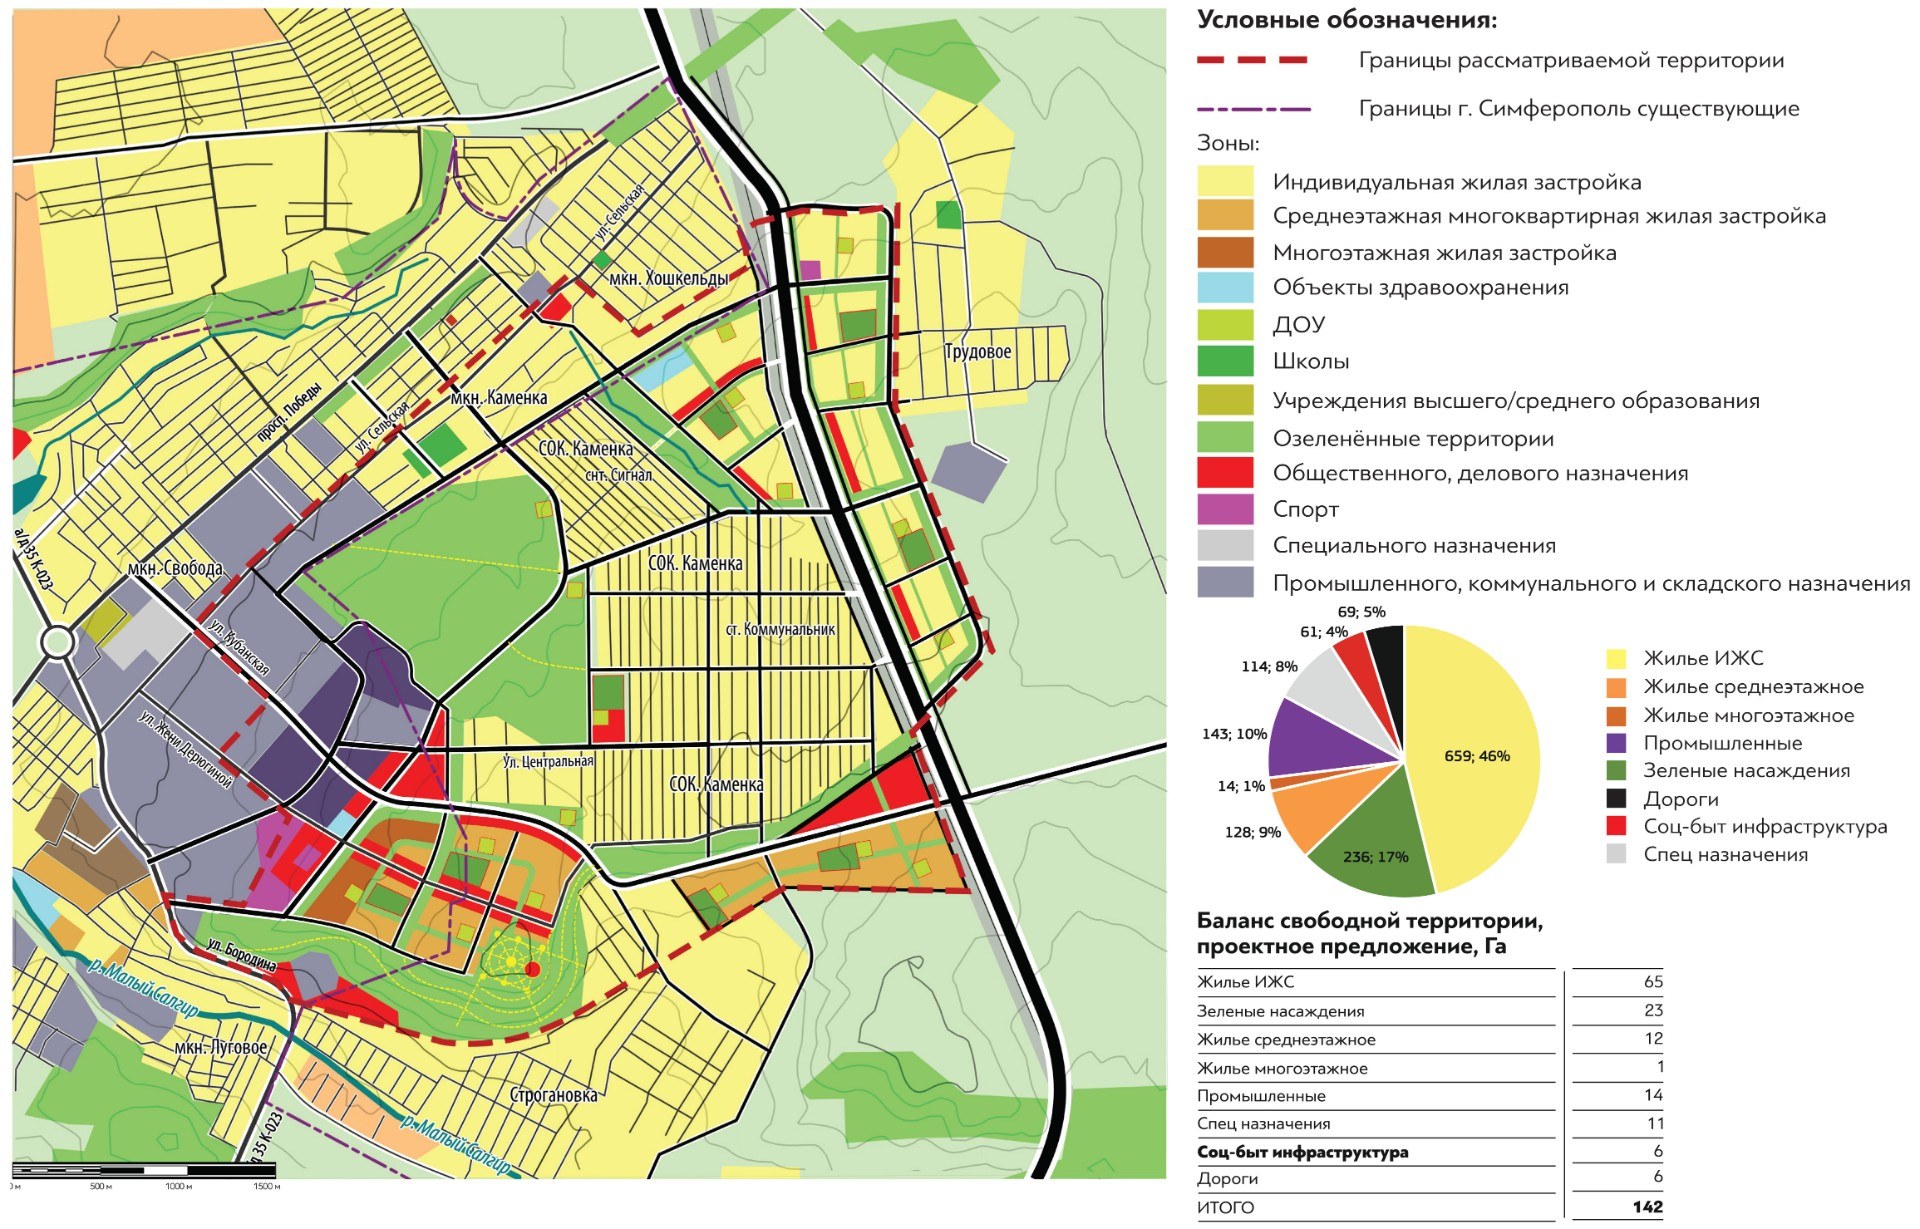 Схема функционального зонирования территории Ульяновска